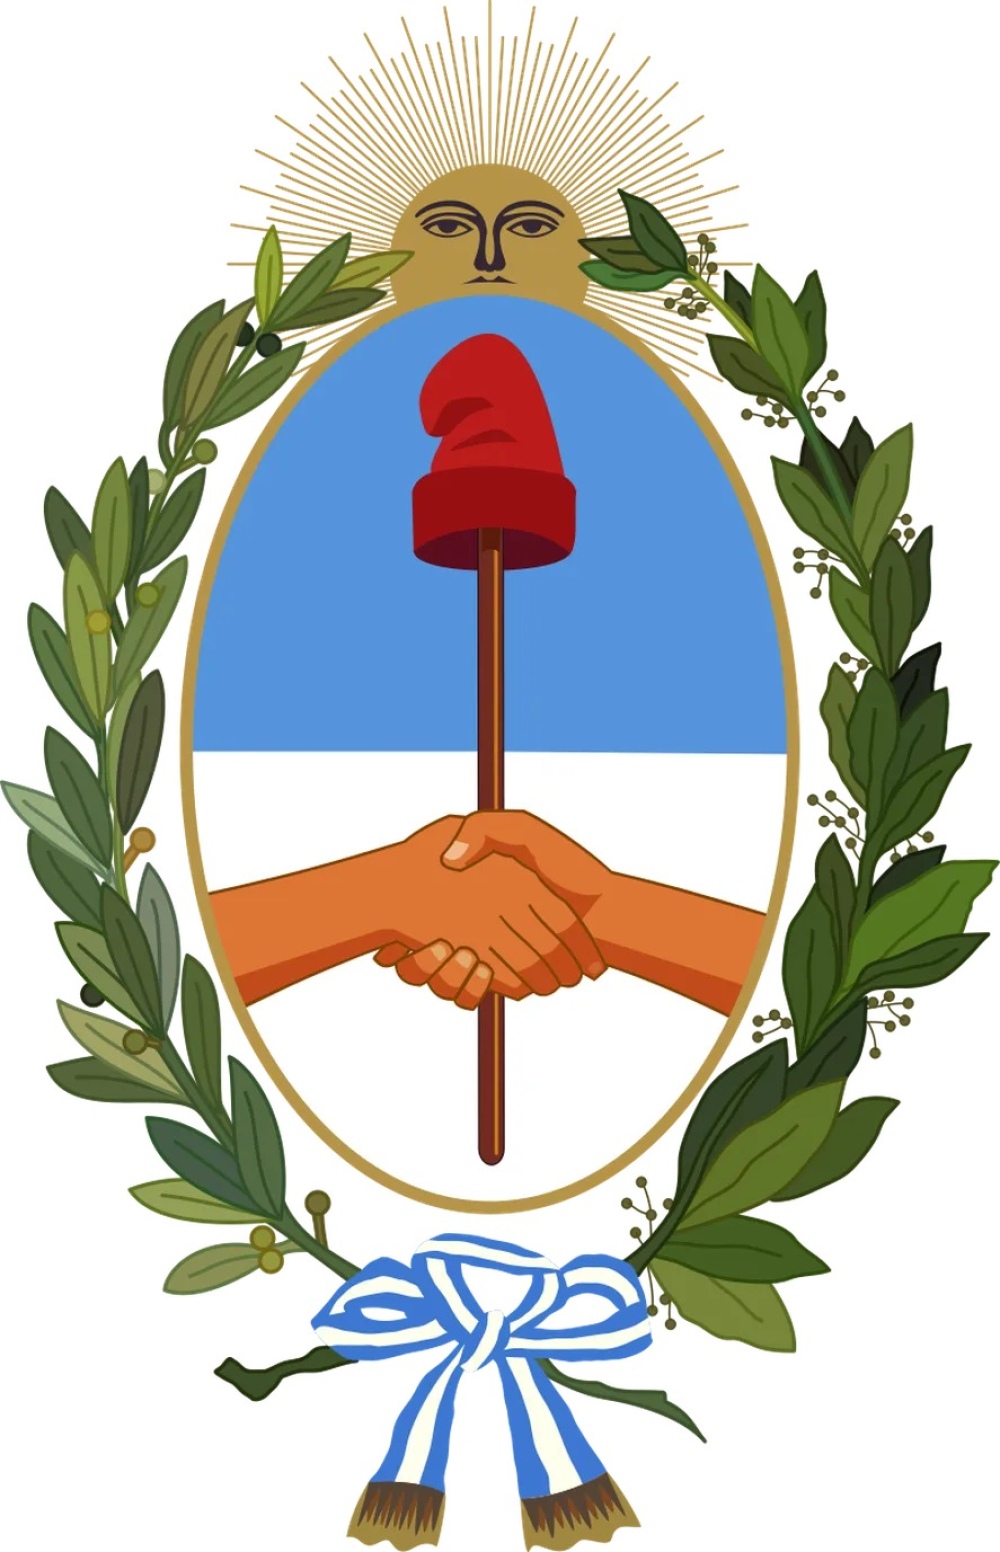 88° aniversario de la creación del Escudo de la Provincia de Buenos Aires